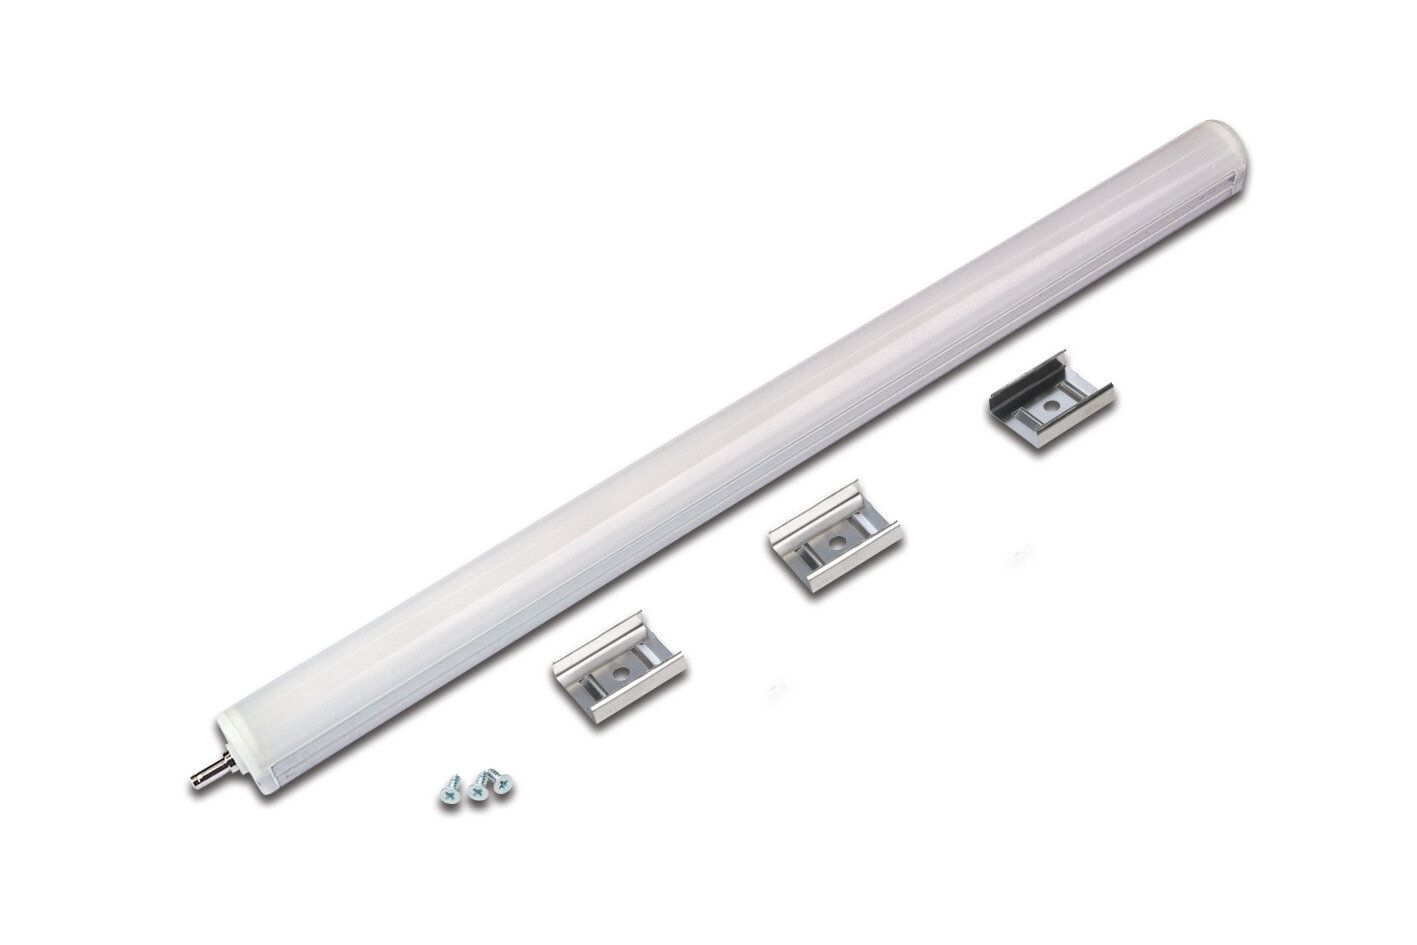 Linienleuchte LED Evo-Stick F2